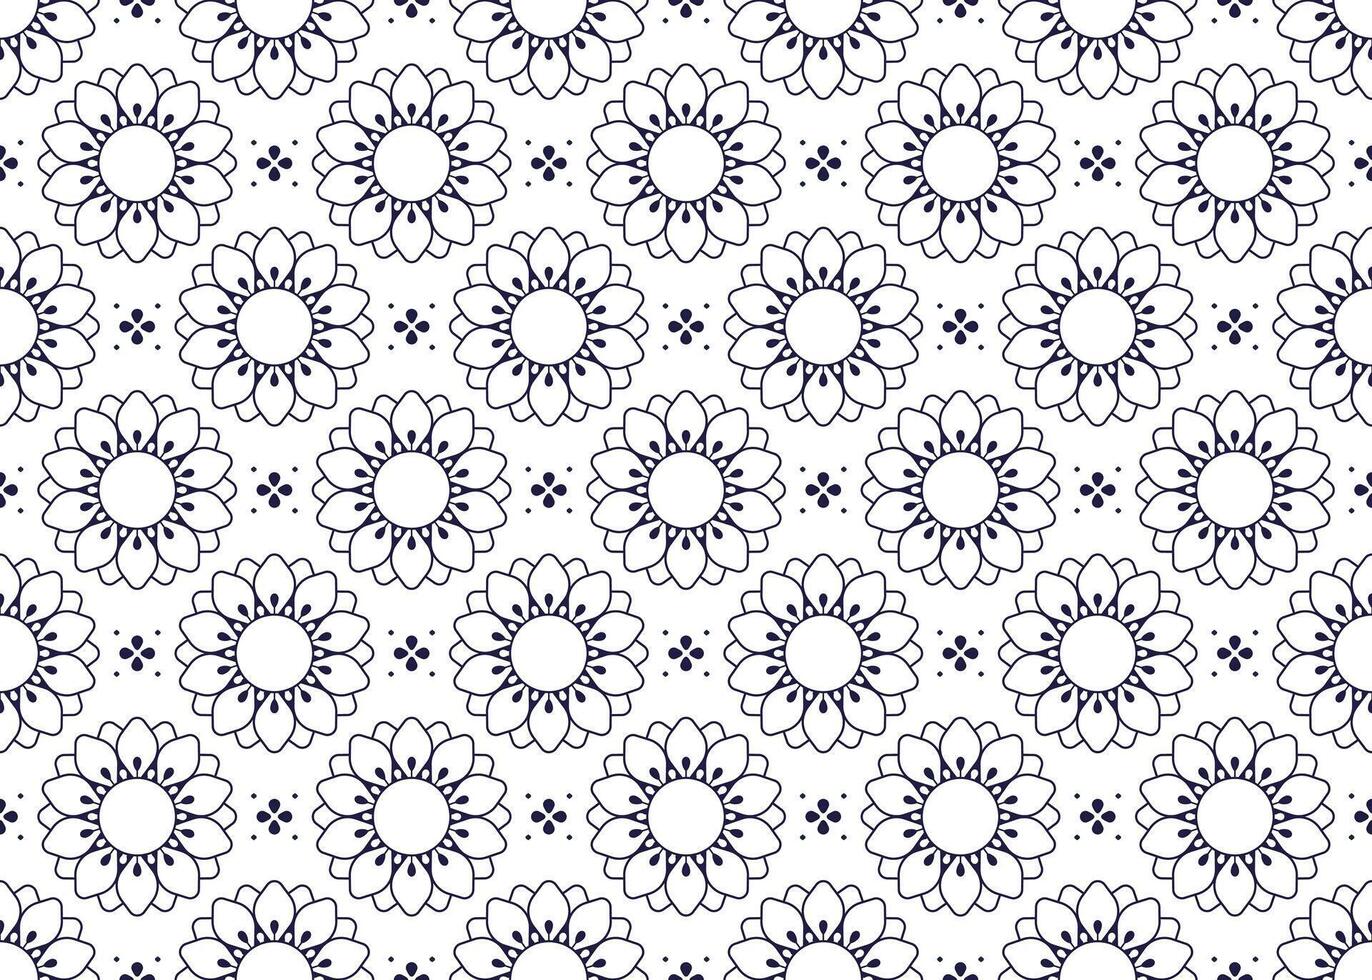 Symbol Blumen Gliederung auf Weiß Hintergrund, ethnisch Stoff nahtlos Muster Design zum Tuch, Teppich, Batik, Hintergrund, Verpackung usw. vektor